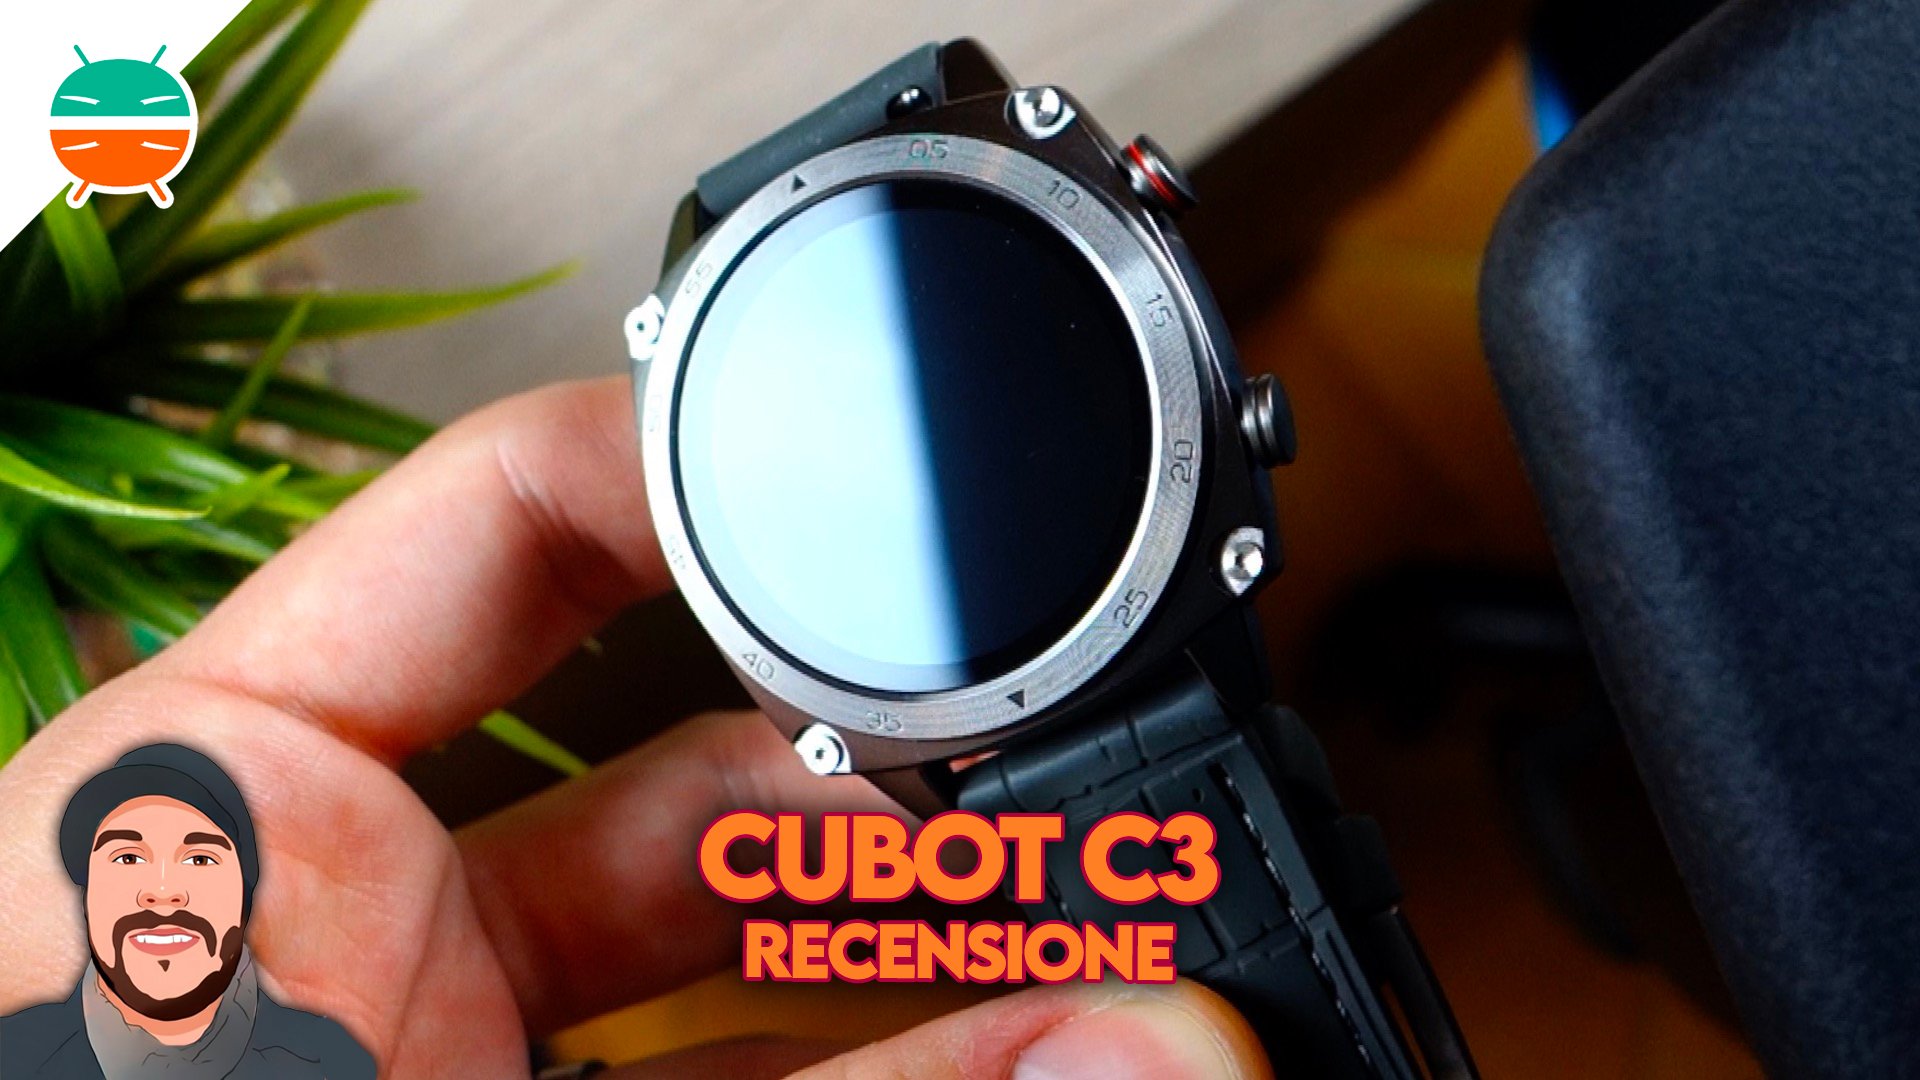 doorboren apotheker bellen CUBOT C3 review, een super goedkope smartwatch - GizChina.it